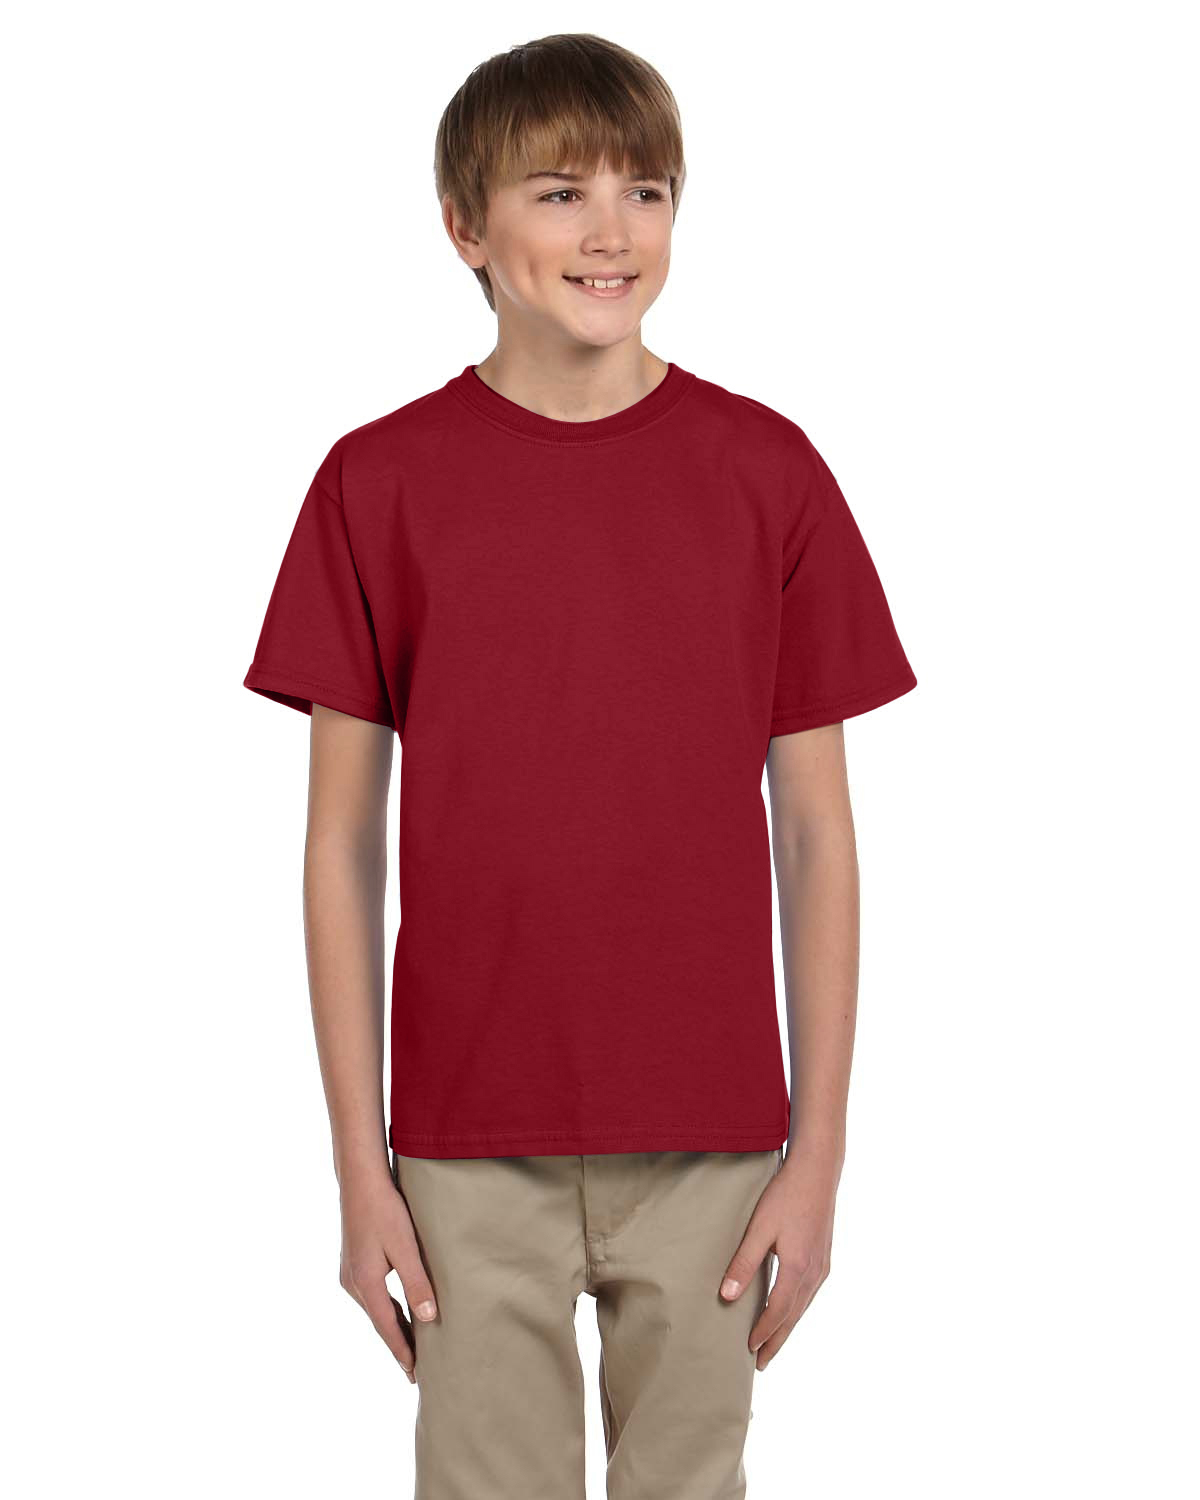 total crimson color shirts